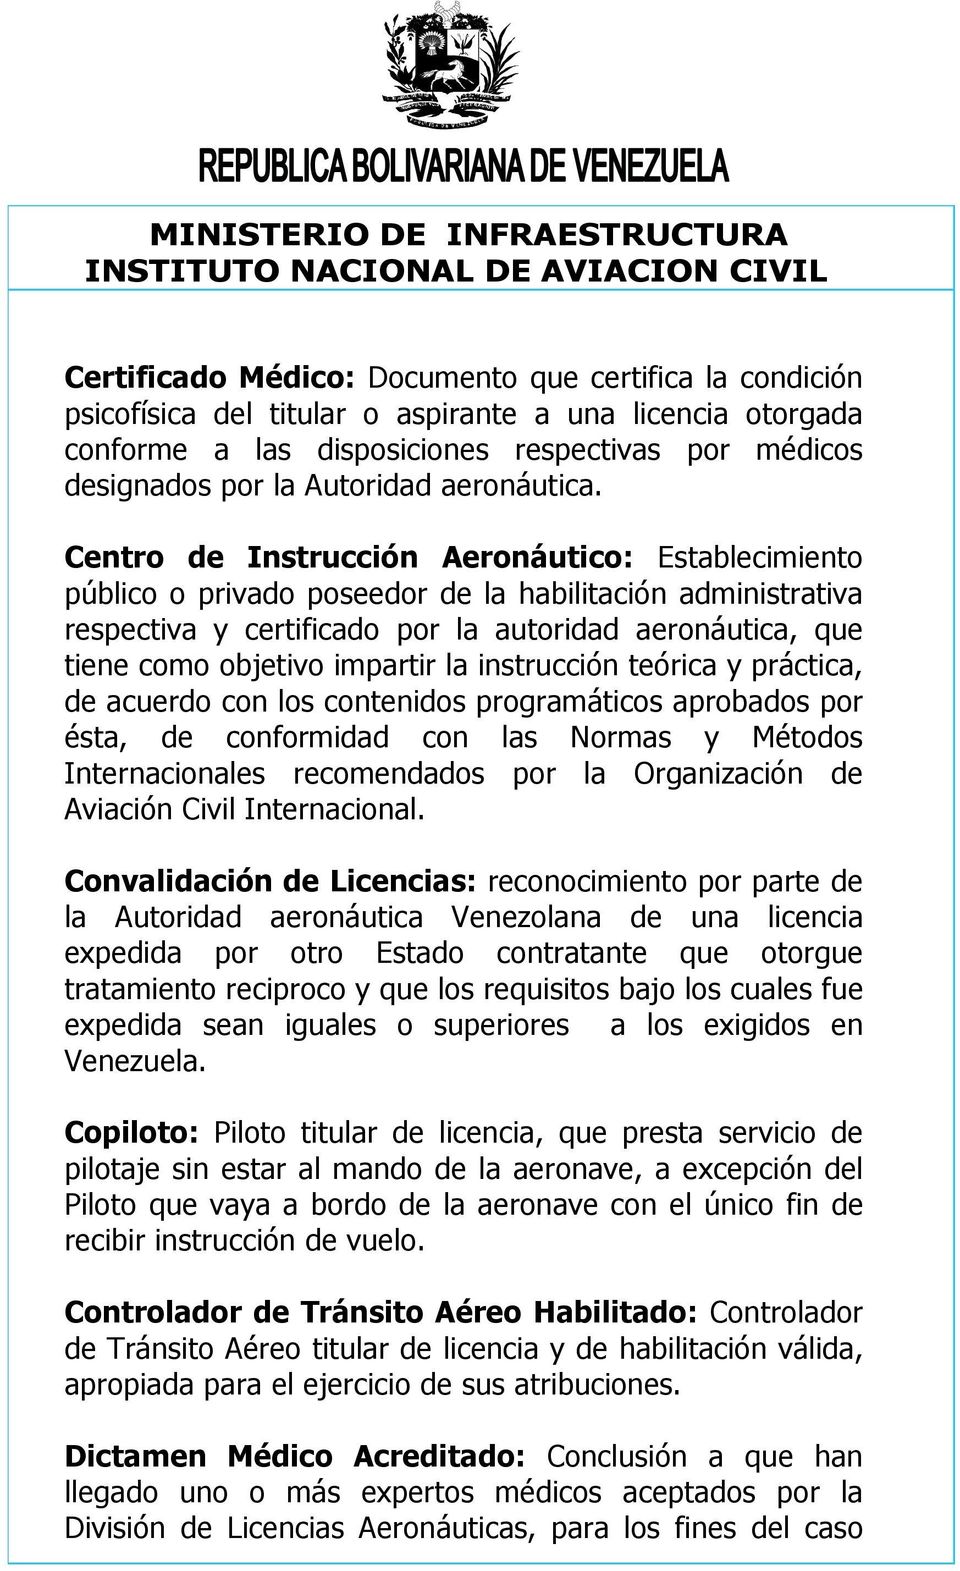 Centro de Instrucción Aeronáutico: Establecimiento público o privado poseedor de la habilitación administrativa respectiva y certificado por la autoridad aeronáutica, que tiene como objetivo impartir